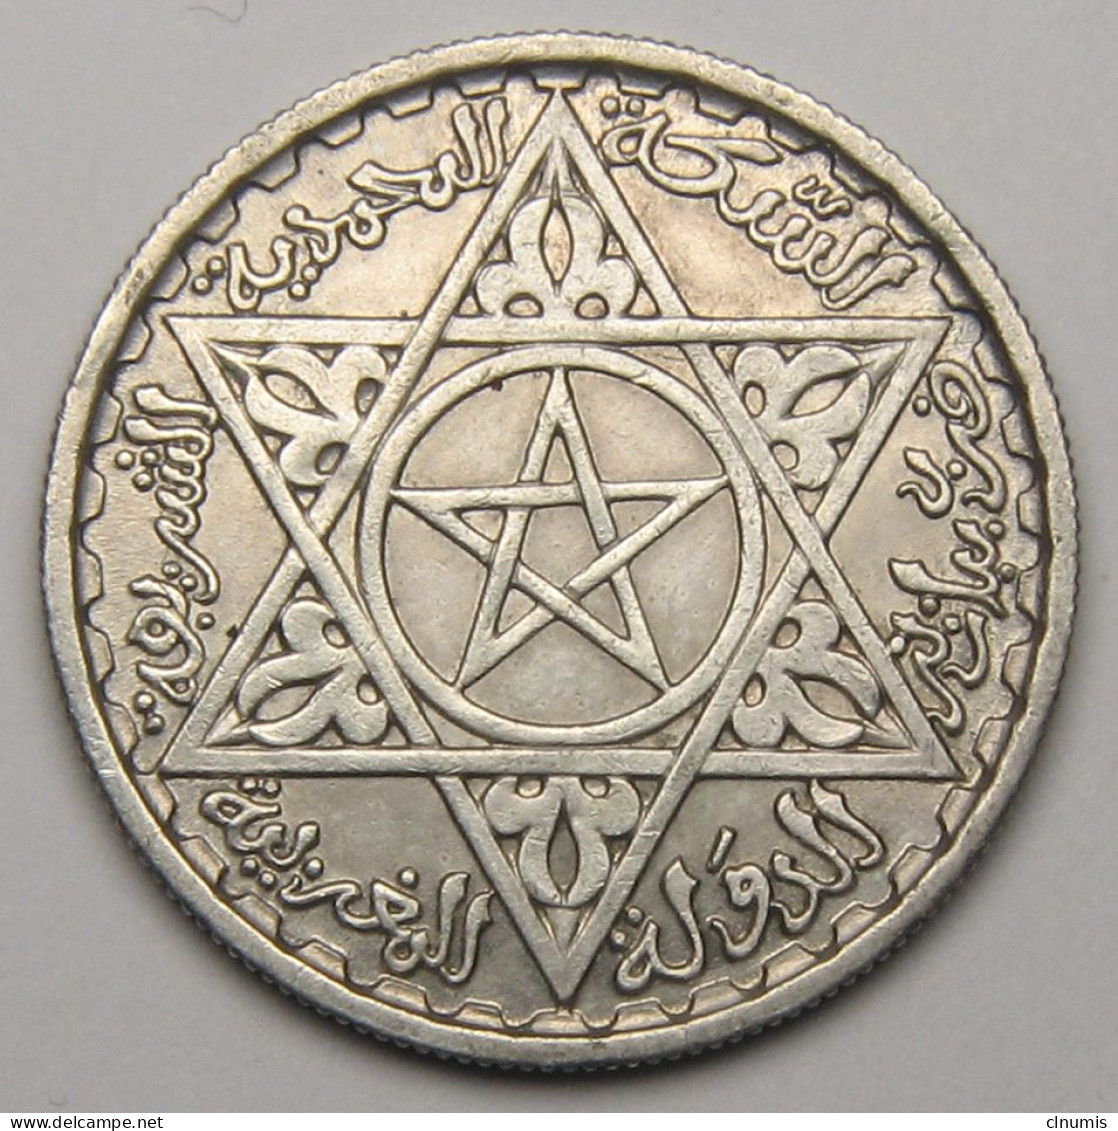 Maroc, Protectorat Français, 100 Francs 1953 (1372), Argent - Morocco